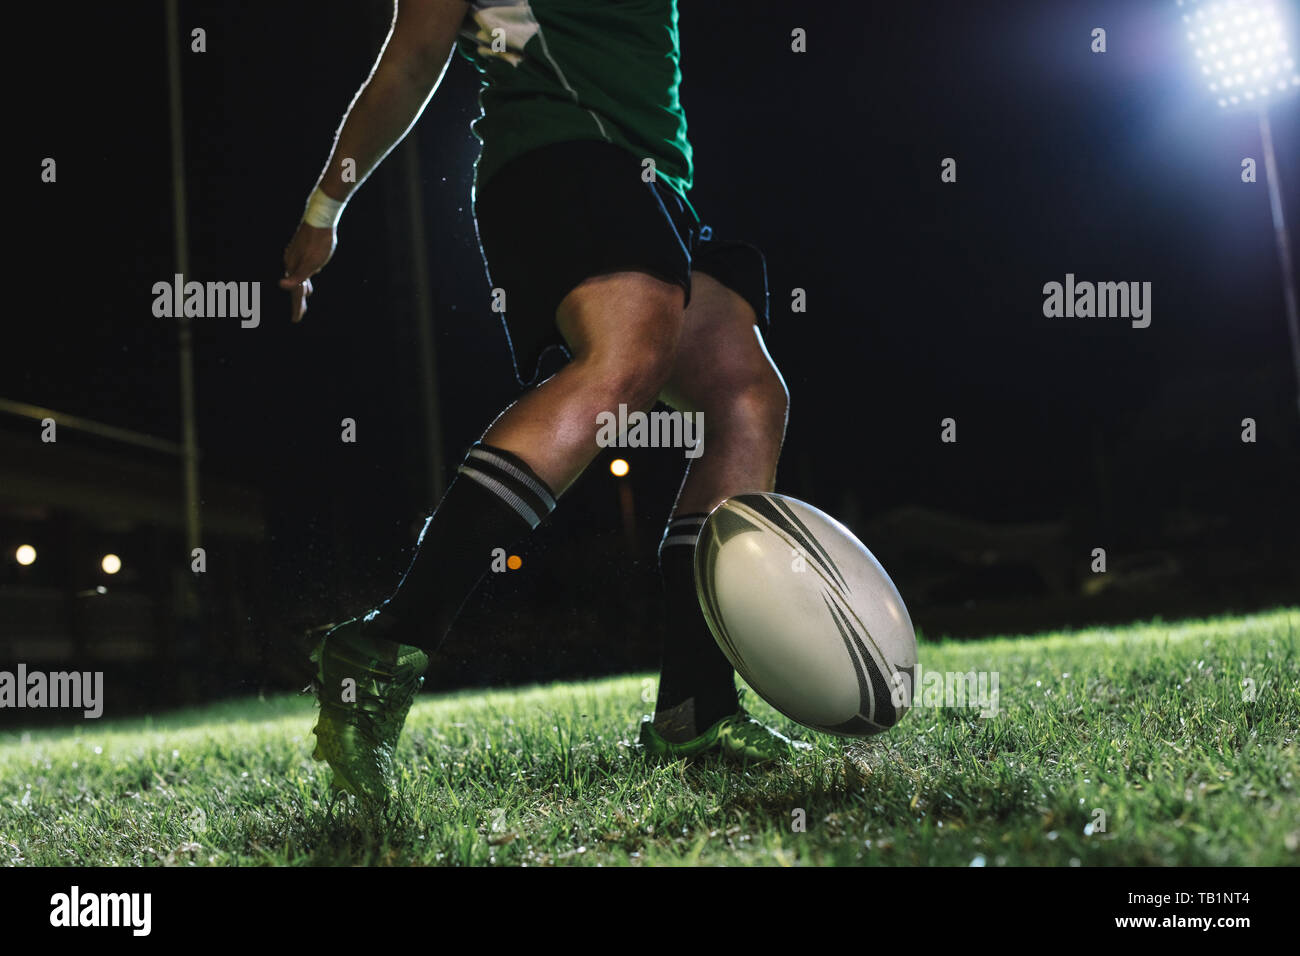 joueur de rugby laisse tomber le ballon sur le sol, puis le frappe juste au moment où il rebondit. joueur de rugby frappant un but perdu sous les lumières de l'arène sportive. Banque D'Images